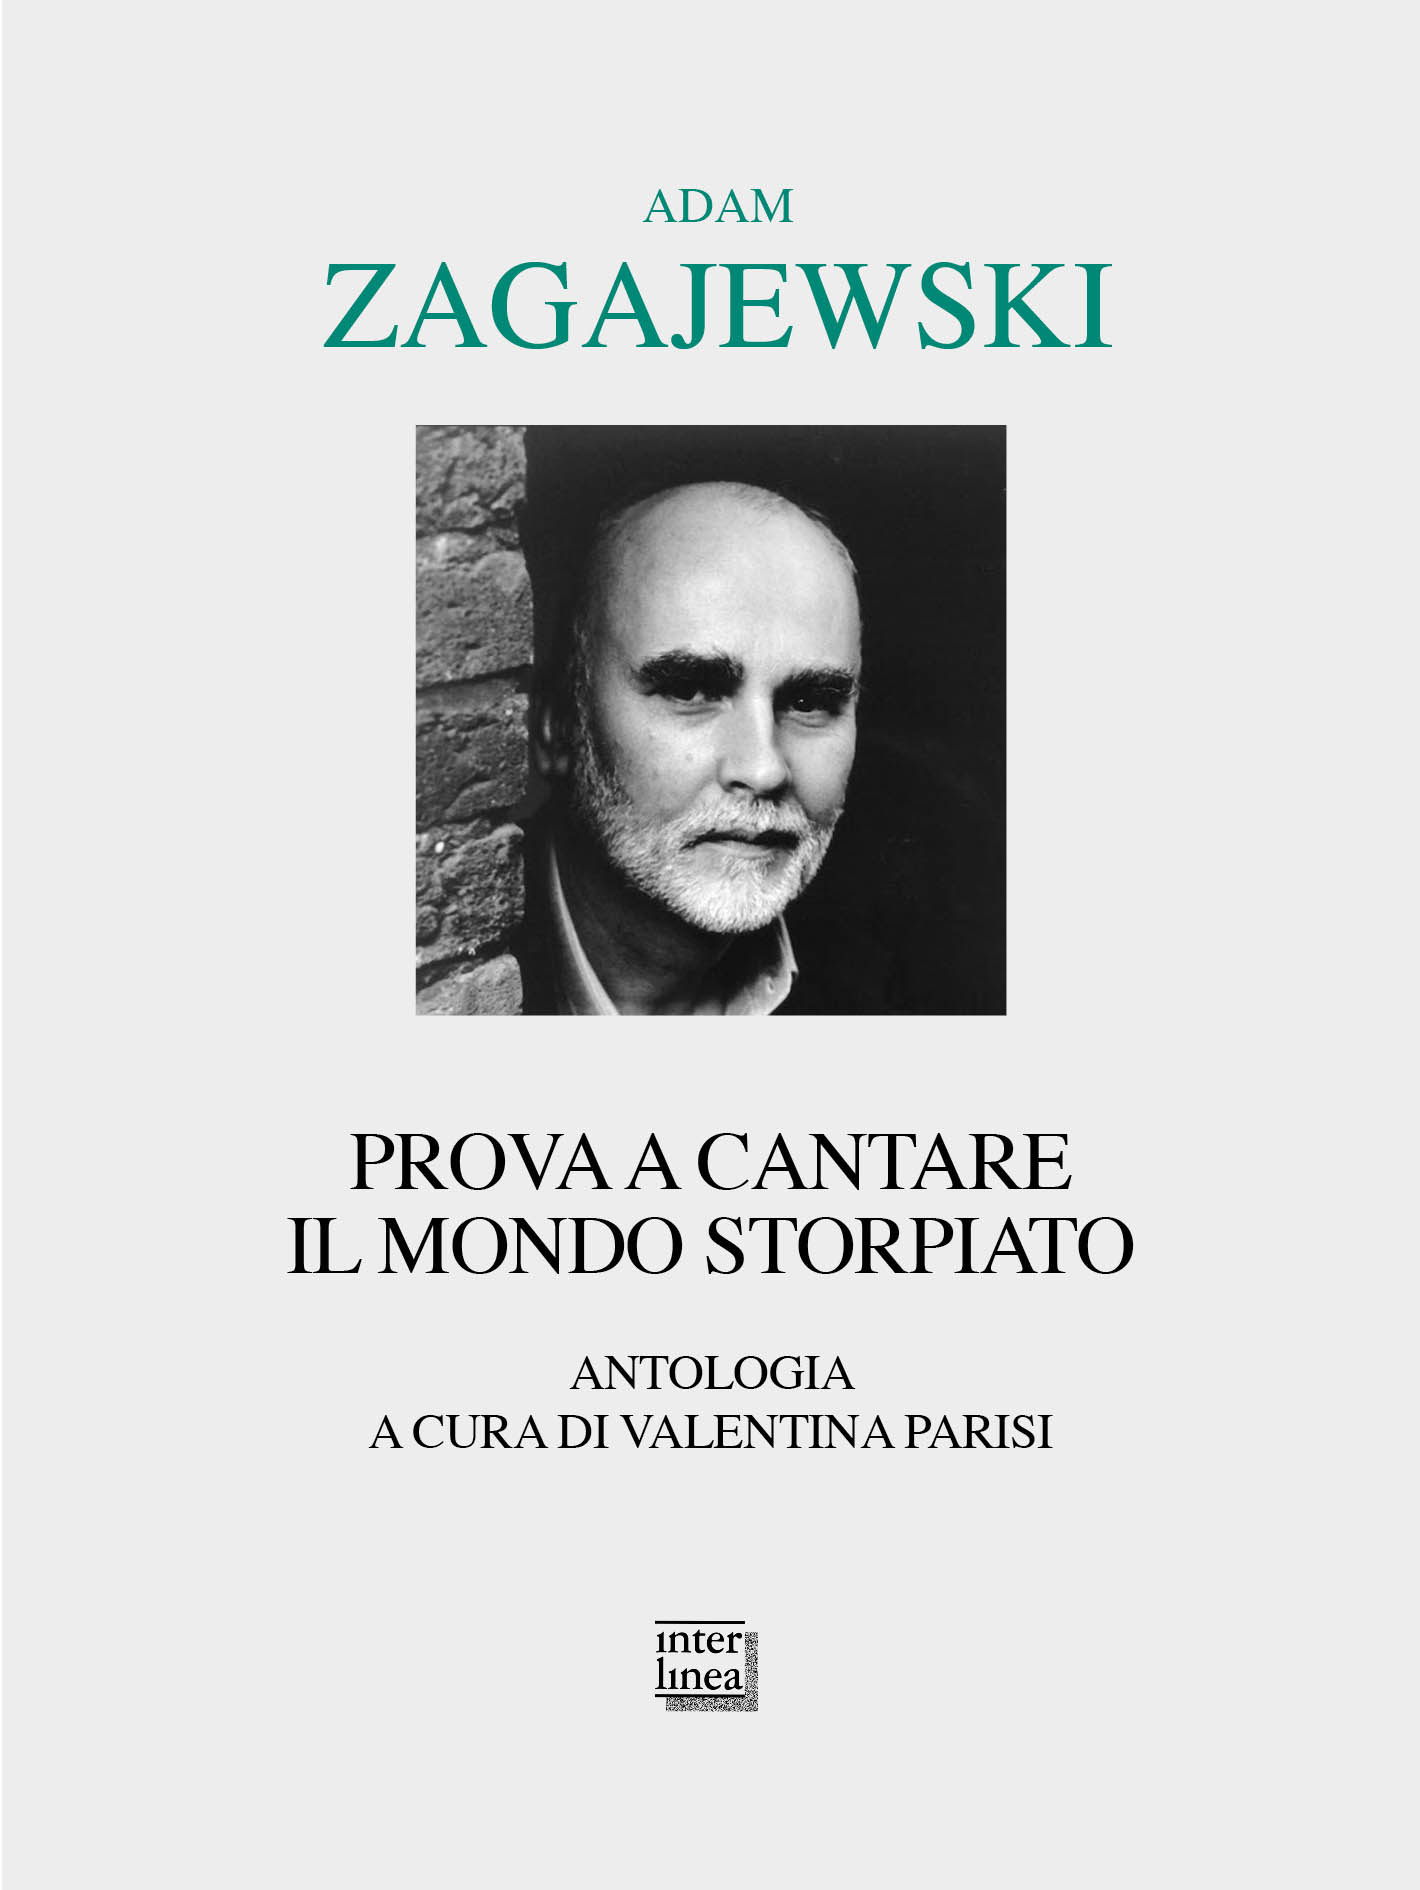 Zagajewski-Adam_Prova-a-cantare-il-mondo-storpiato_poesia-civile